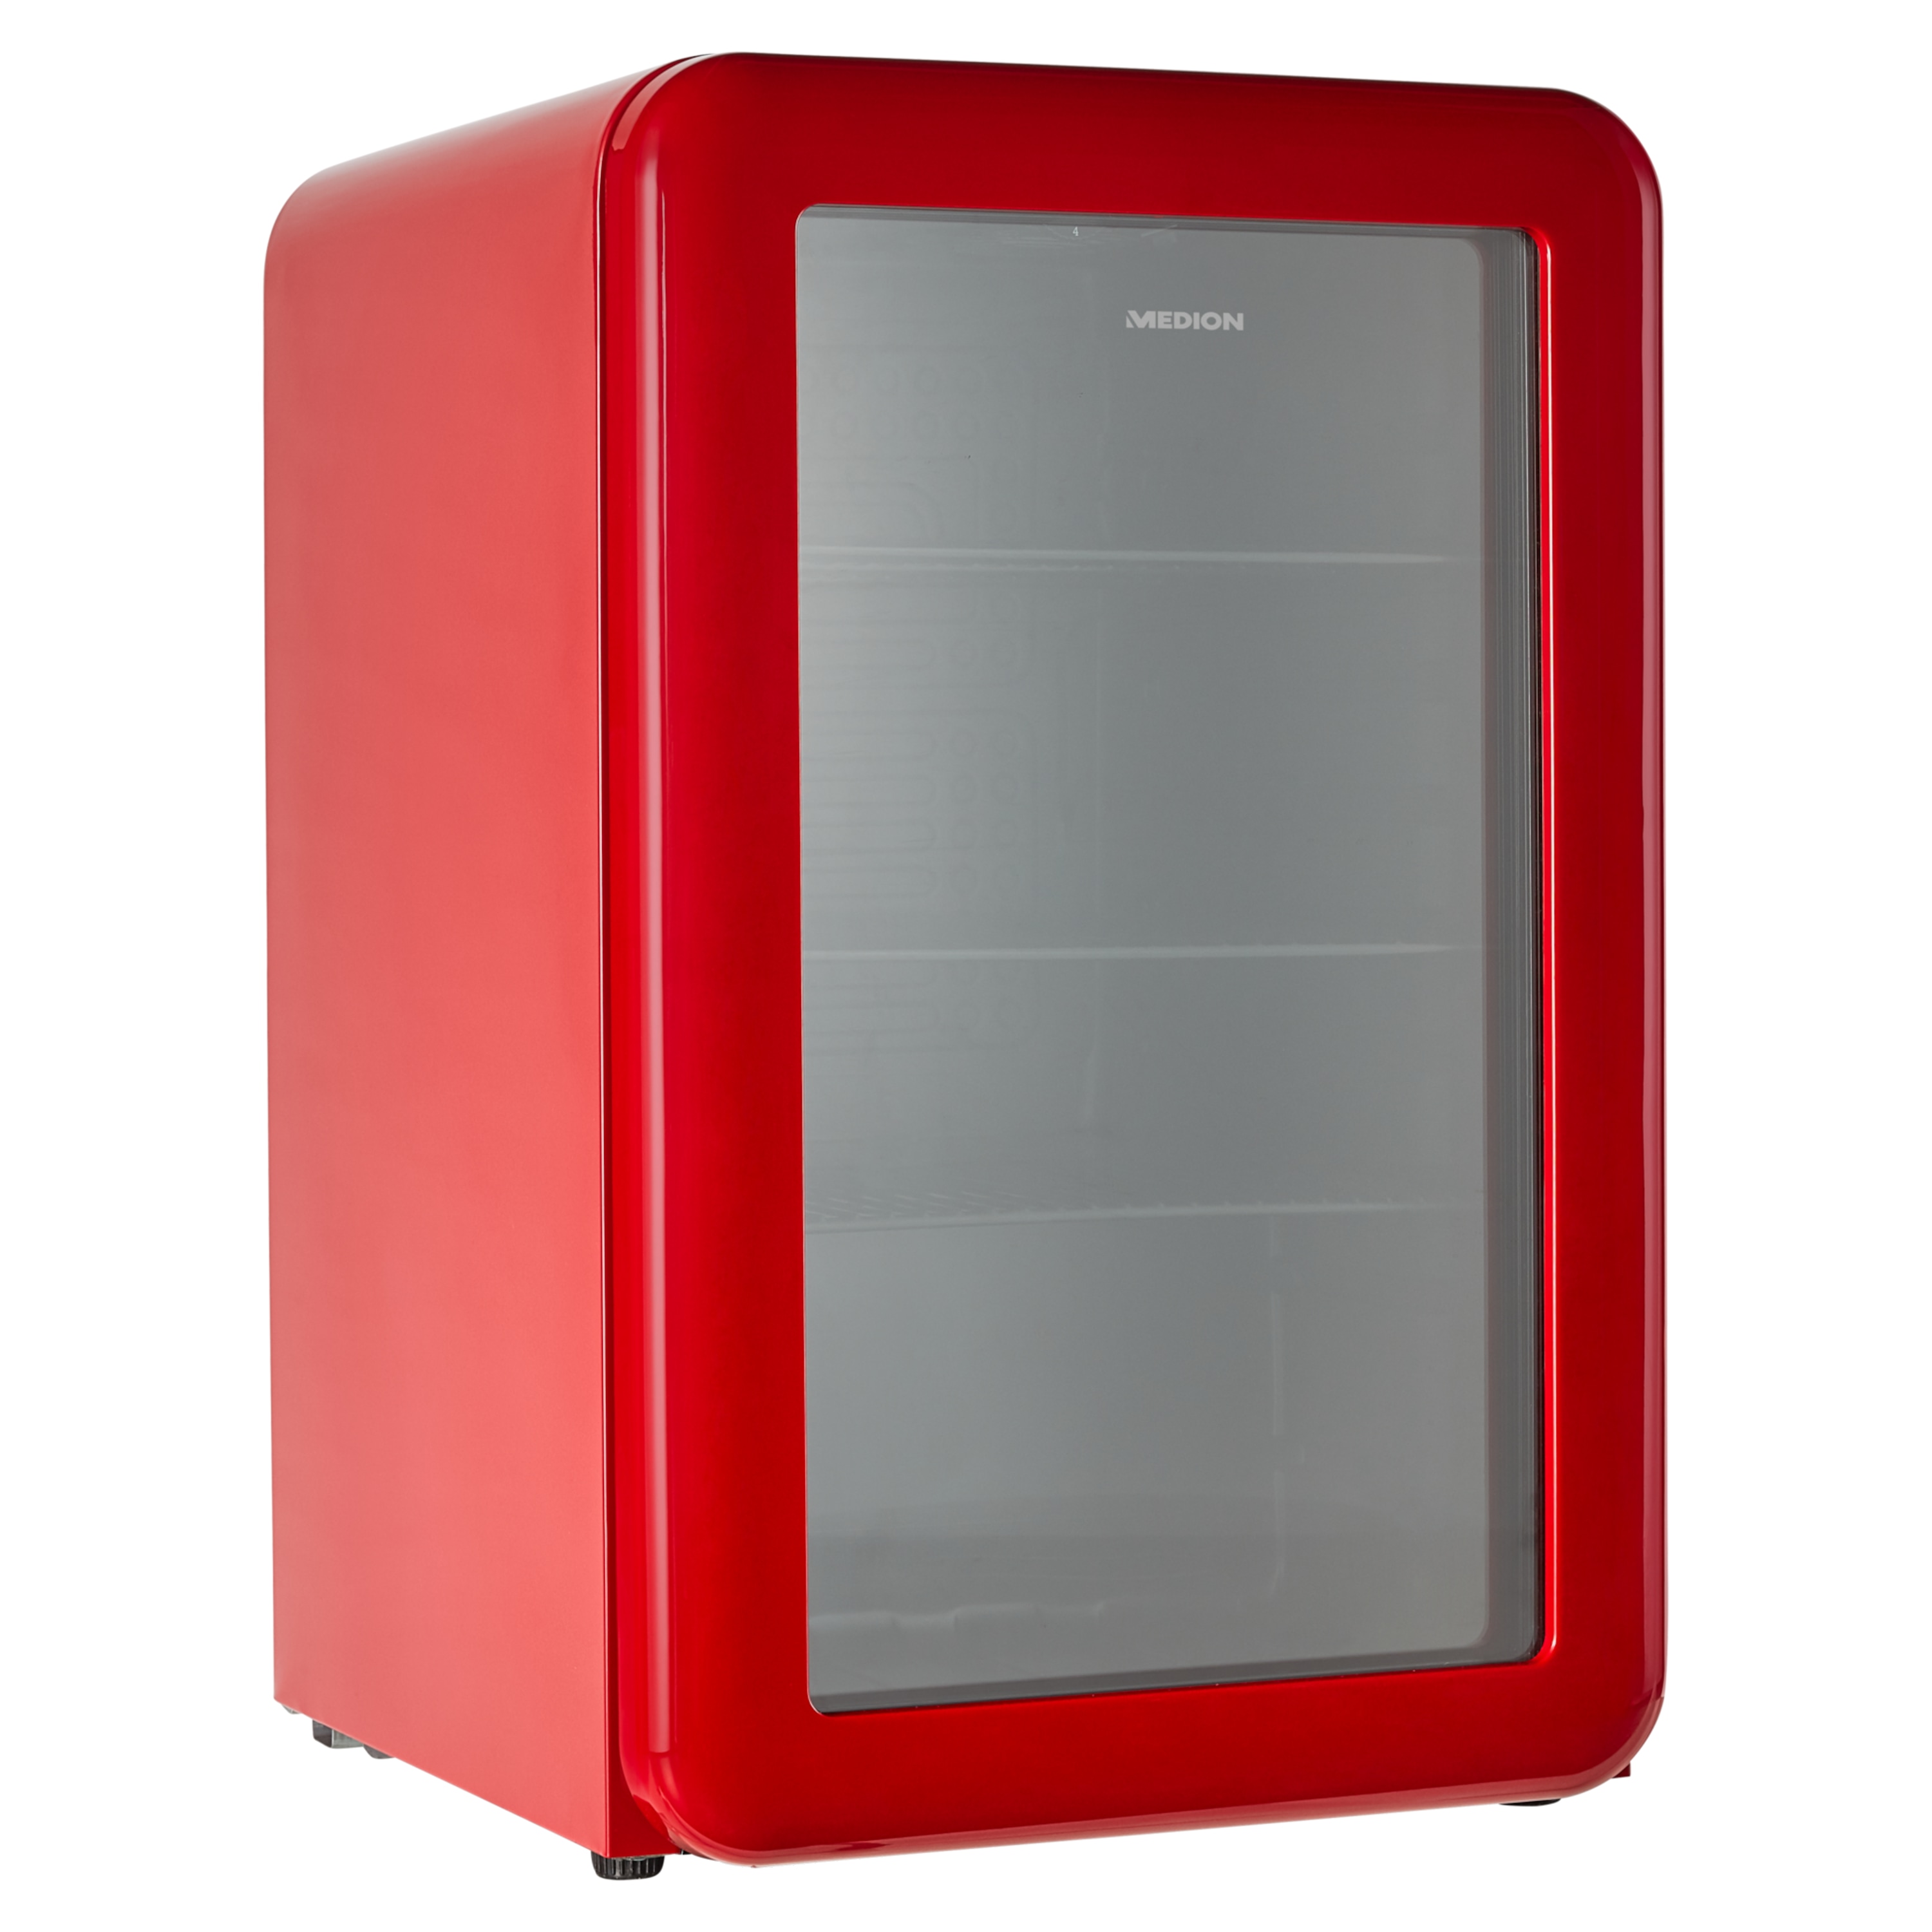 MEDION® Retro Getränke- Kühlschrank MD 37295, 70 L Fassungsvermögen, manuelle Temperaturkontrolle, stylishes Design, höhenverstellbare Füße